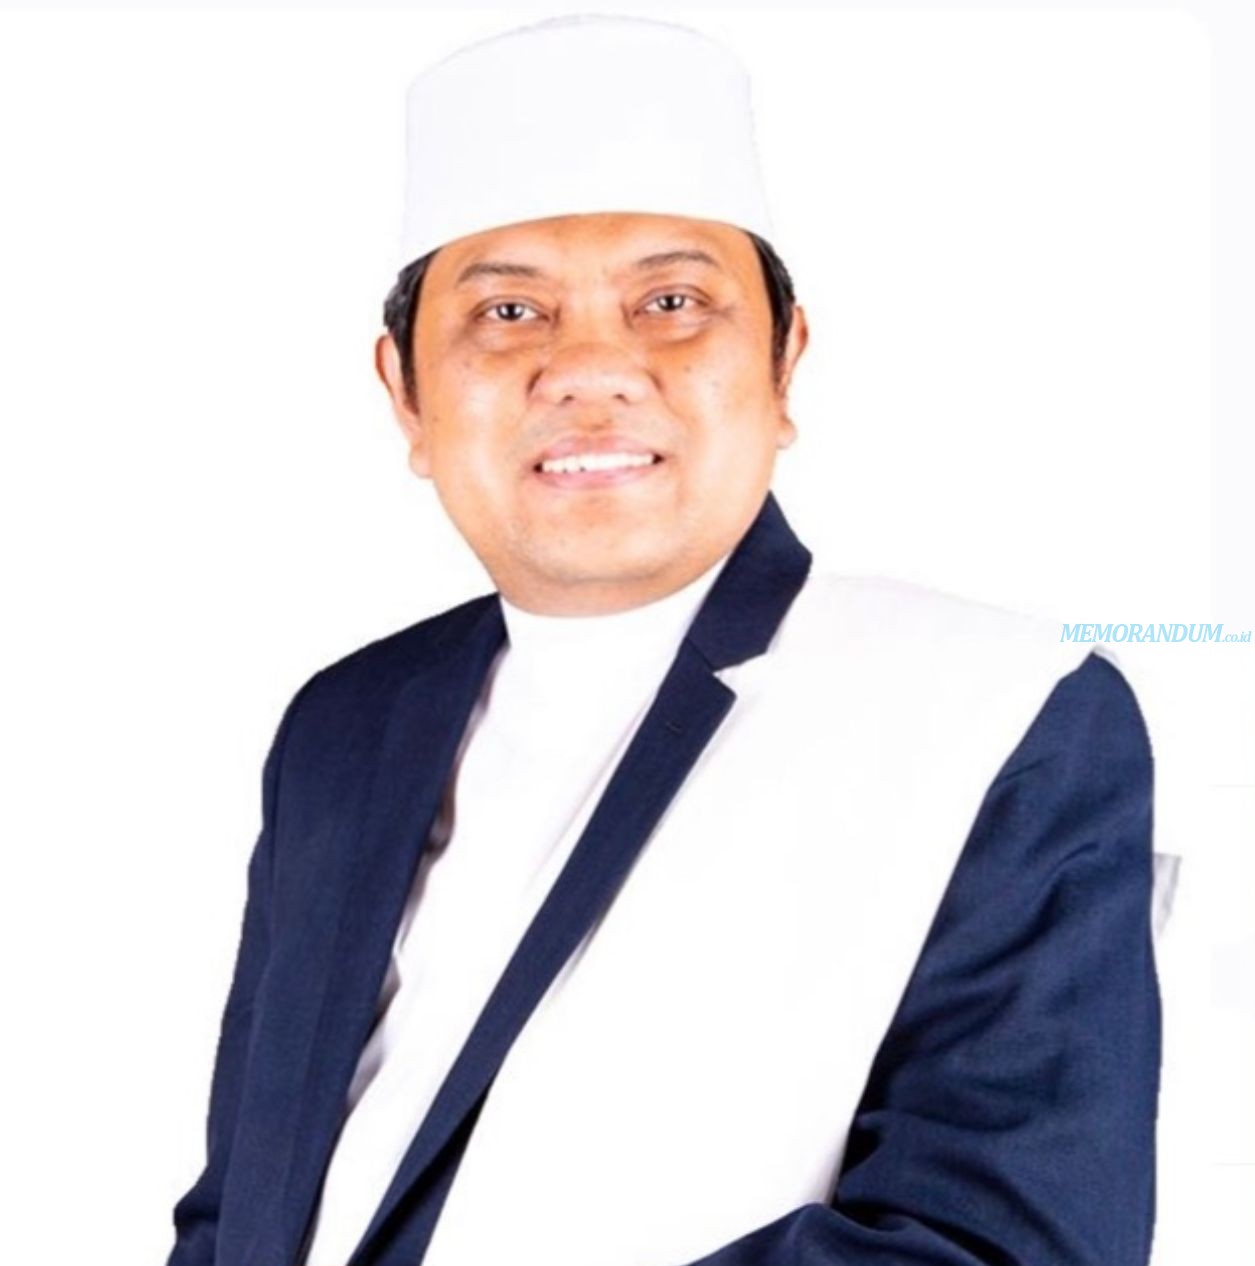 Ziarah Hati Indonesia Konsisten Beri Pelayanan Umroh dan Haji Premium, Hotel Nol Meter Jadi Unggulan